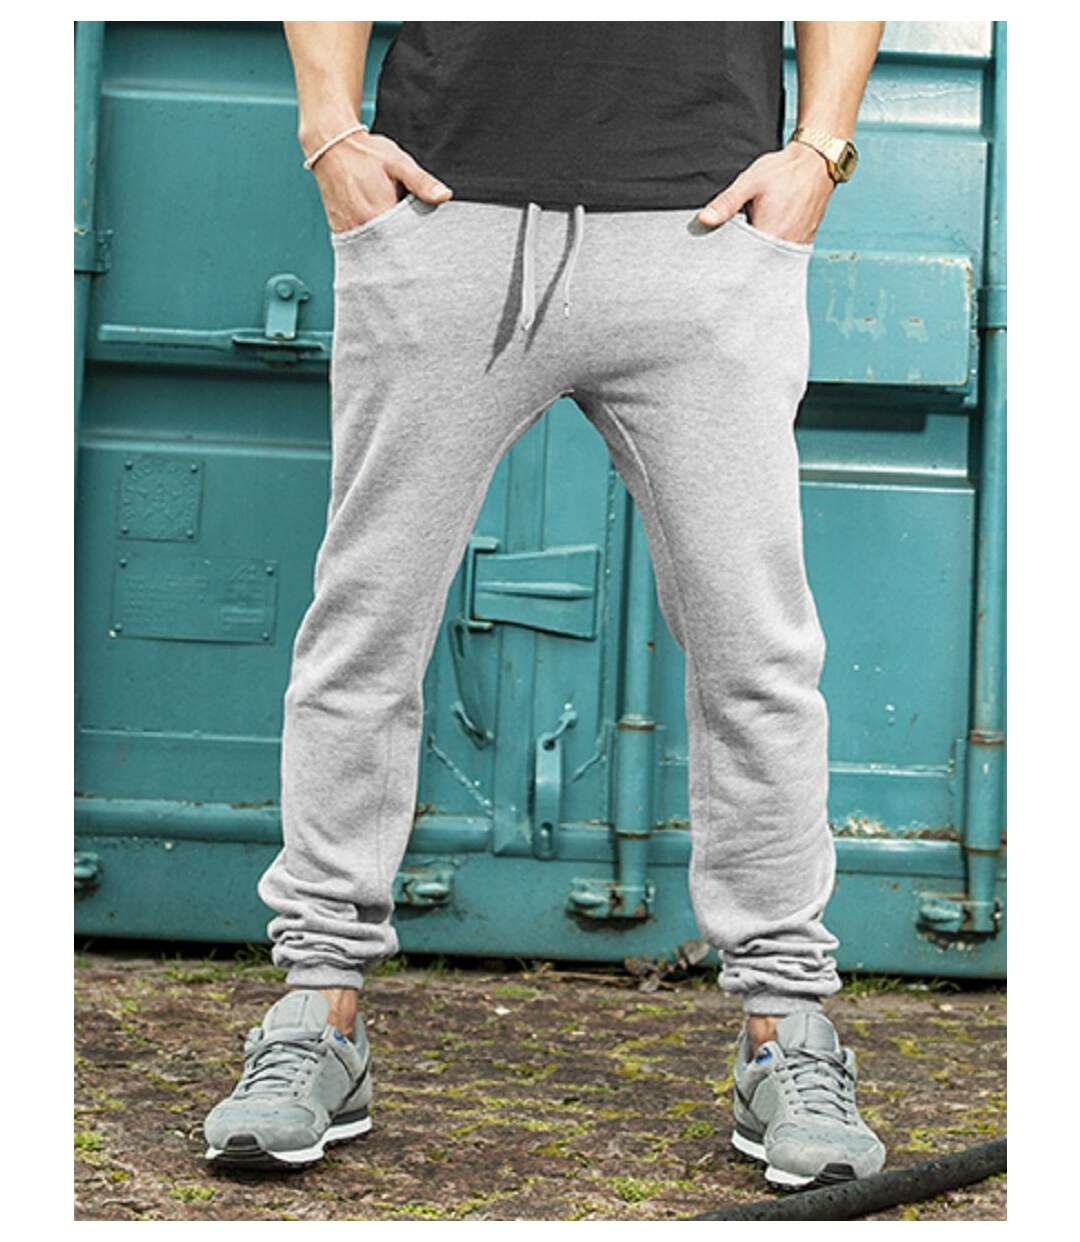 Acheter Pantalon de jogging homme Gris ? Bon et bon marché